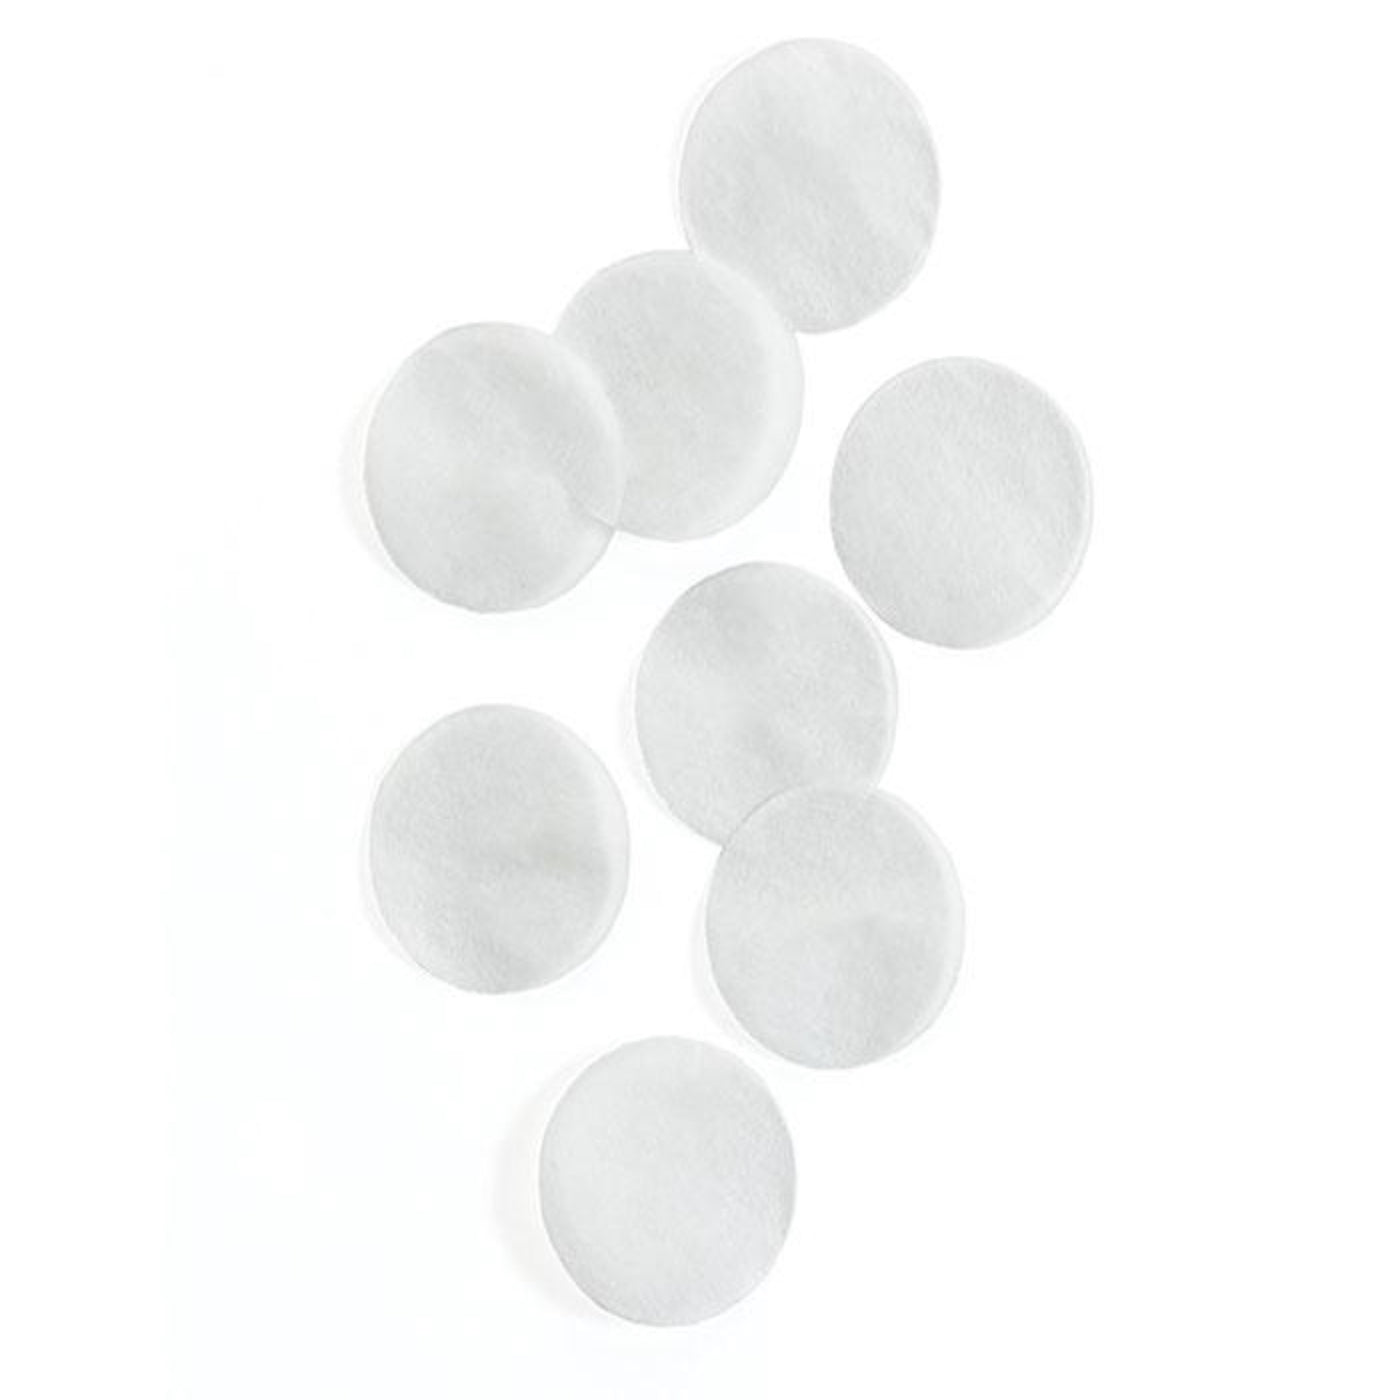 White Tissue Paper Confetti Circles